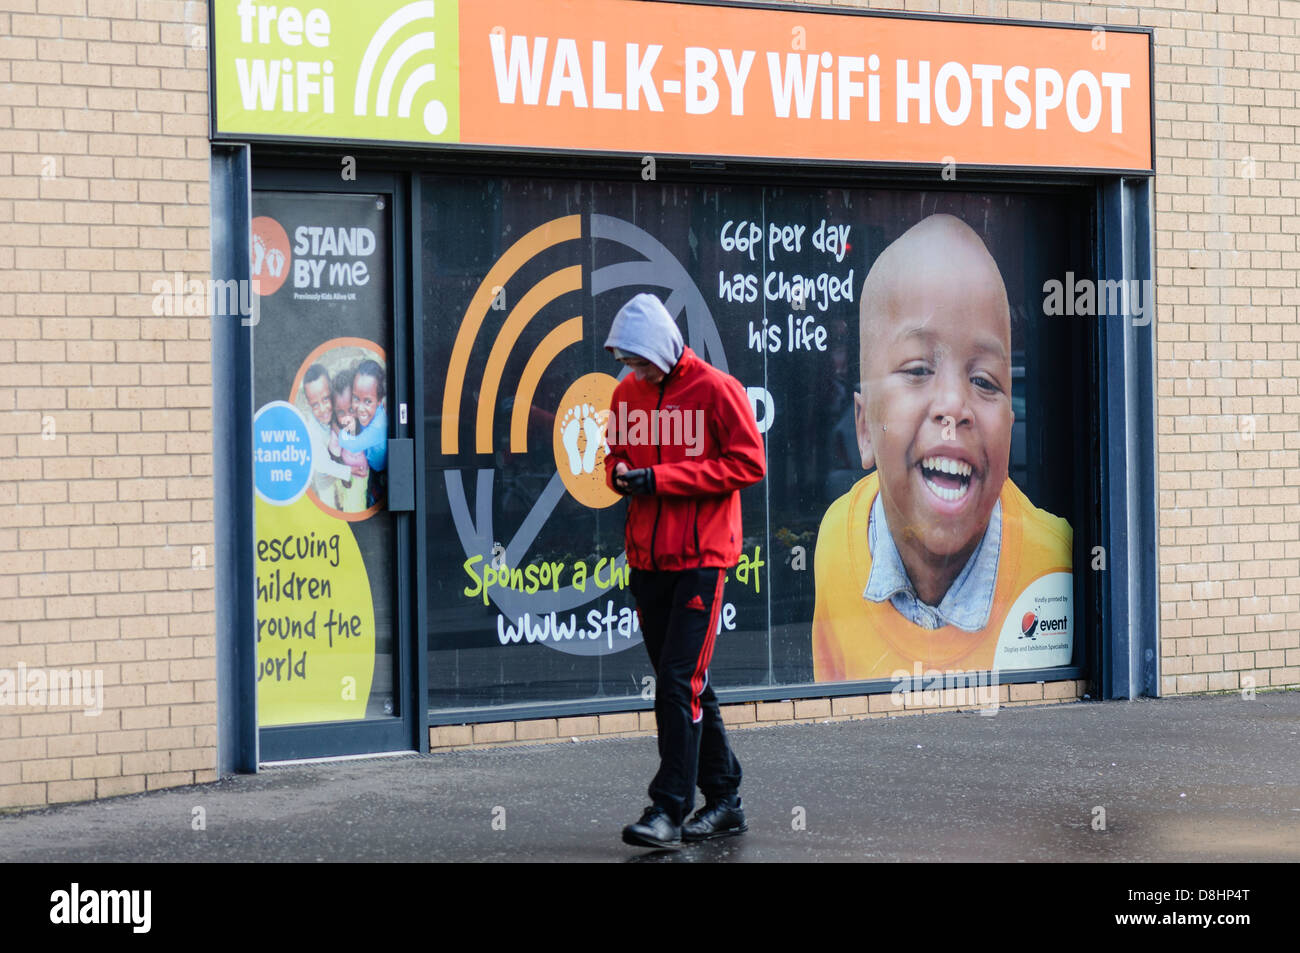 Teenager geht vorbei an einem Spaziergang durch WiFi-Hotspot mit seinem smartphone Stockfoto